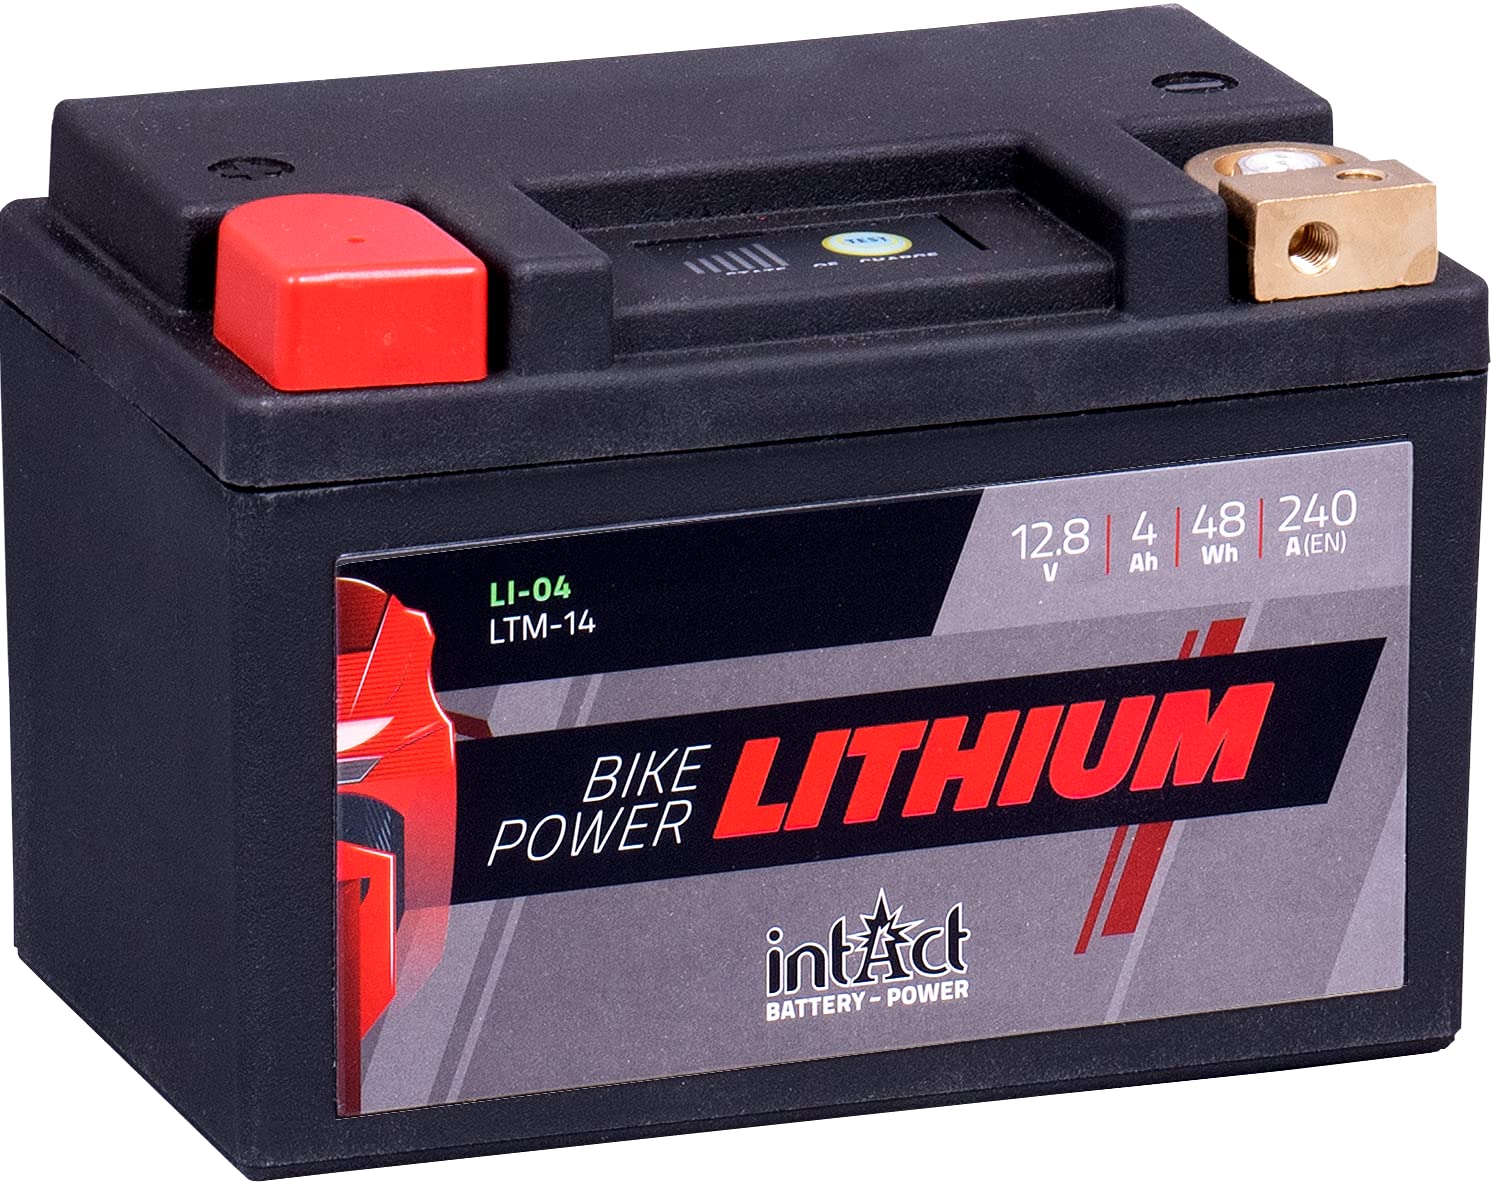 intAct - LITHIUM MOTORRADBATTERIE | Batterie für Roller, Motorrad, Quads uvm. Bis zu 75% Gewichtseinsparung | Bike-Power LI-04, LTM14, 12,8V Batterie, 4 AH (c10), 48 Wh, 240 A (CCA) | Maße: 148x86x105mm von Intact